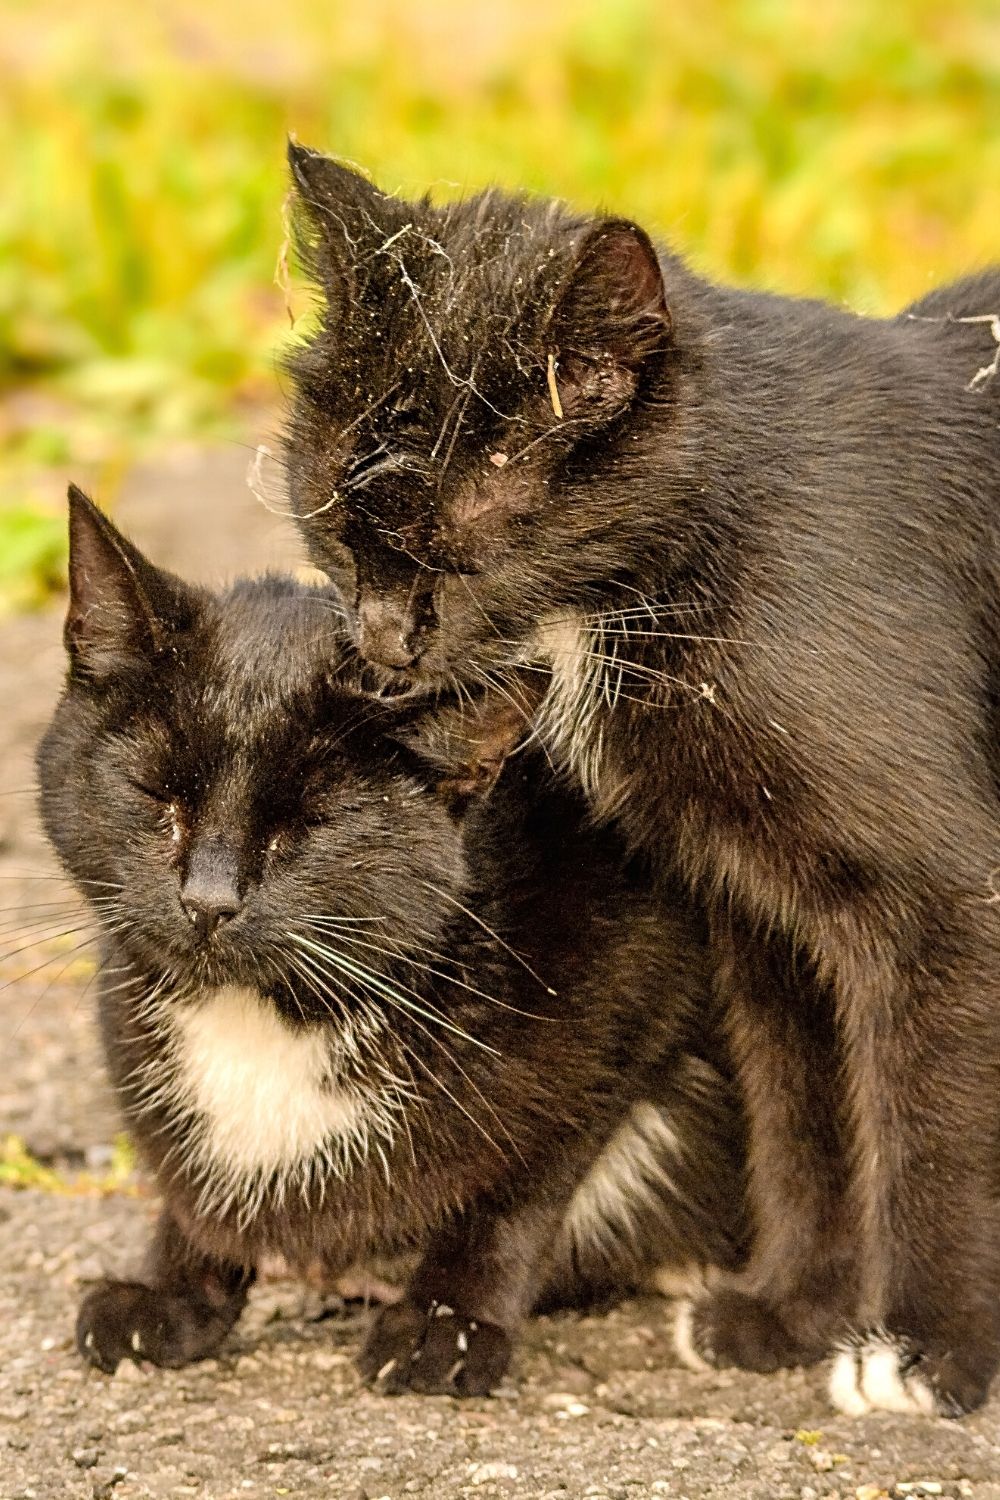 Les chats montrent leur affection les uns pour les autres en se toilettant et en nettoyant leurs oreilles